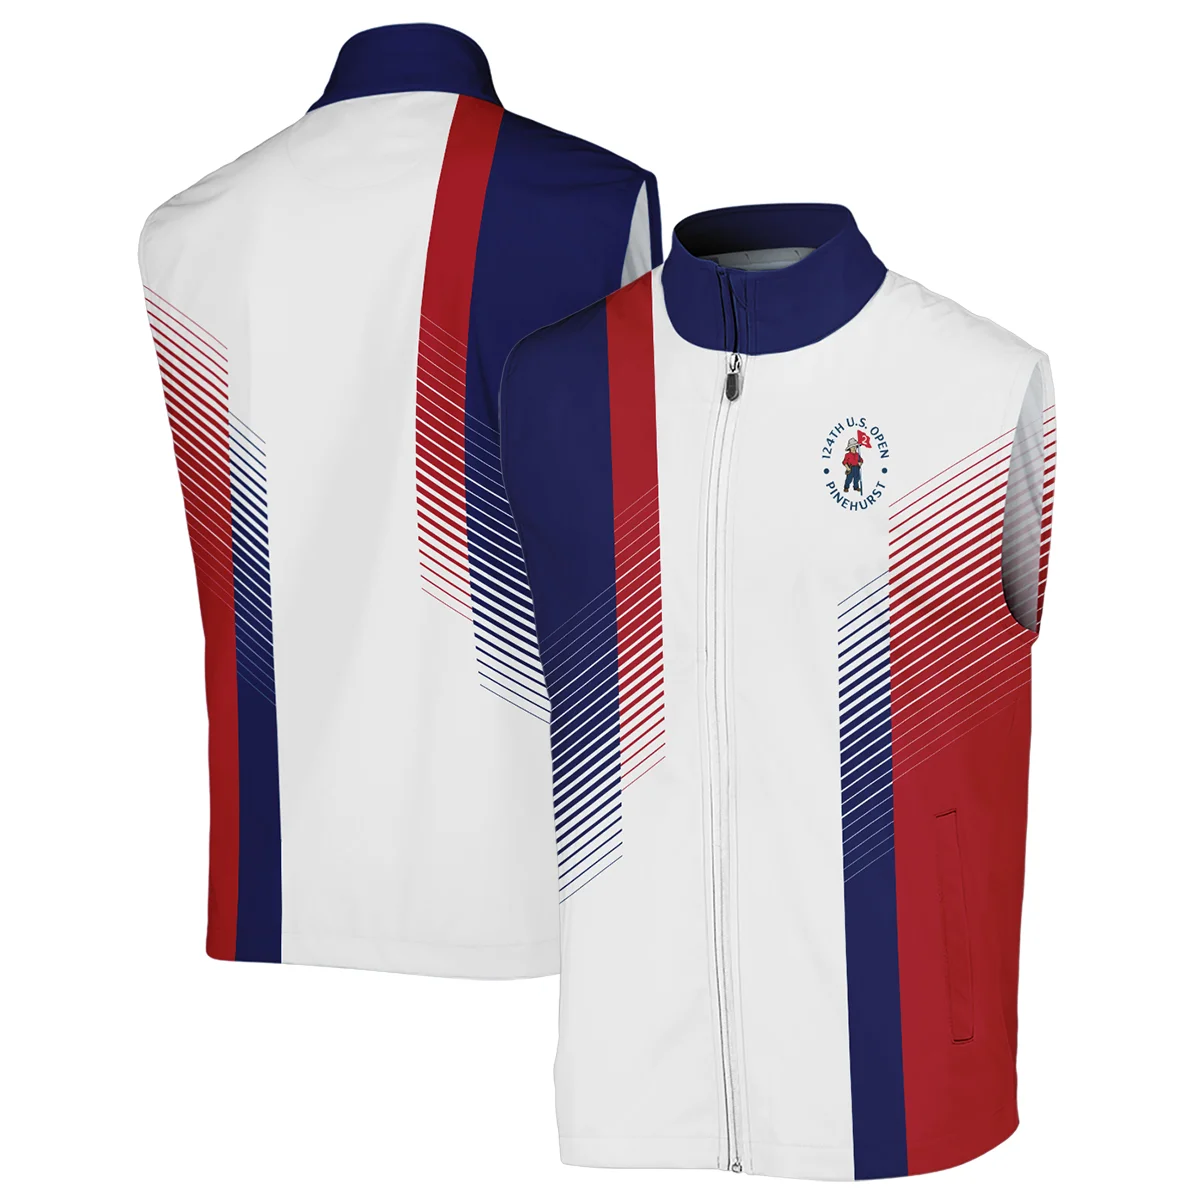 124th U.S. Open Pinehurst Sports Callaway Zipper Polo Shirt Golf Blue Red All Over Print Zipper Polo Shirt For Men